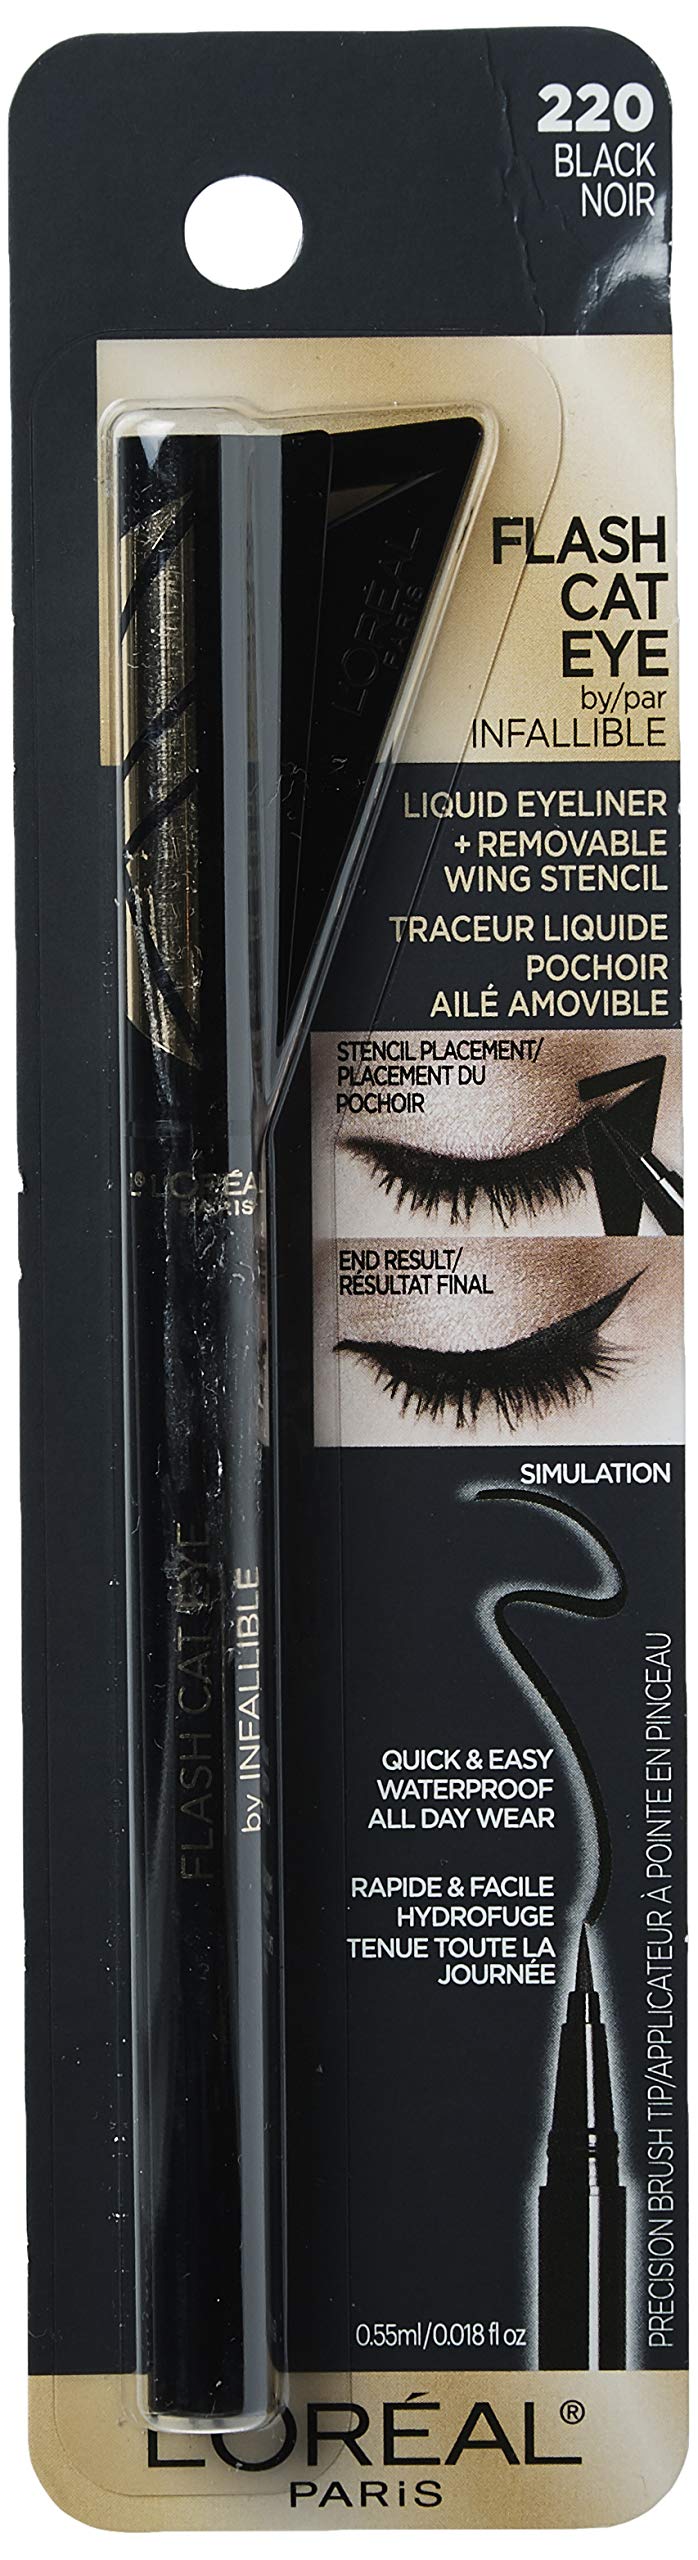 L’Oréal Paris Makeup Infallible Flash Cat Eye Waterproof Liquid Eyeliner, Black